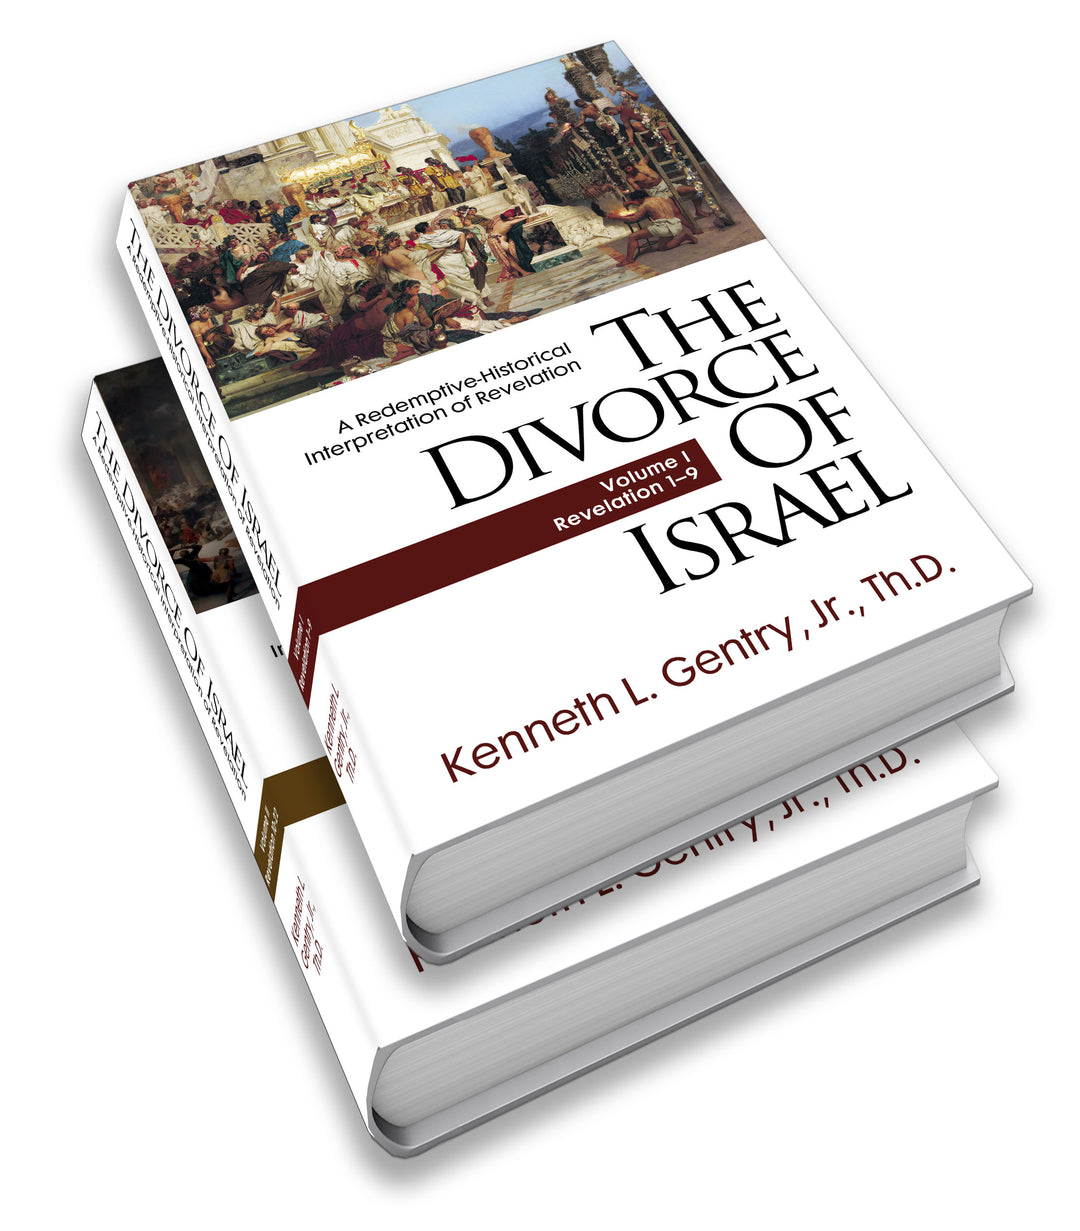 Divorce of Israel, The [PRE-ORDER]